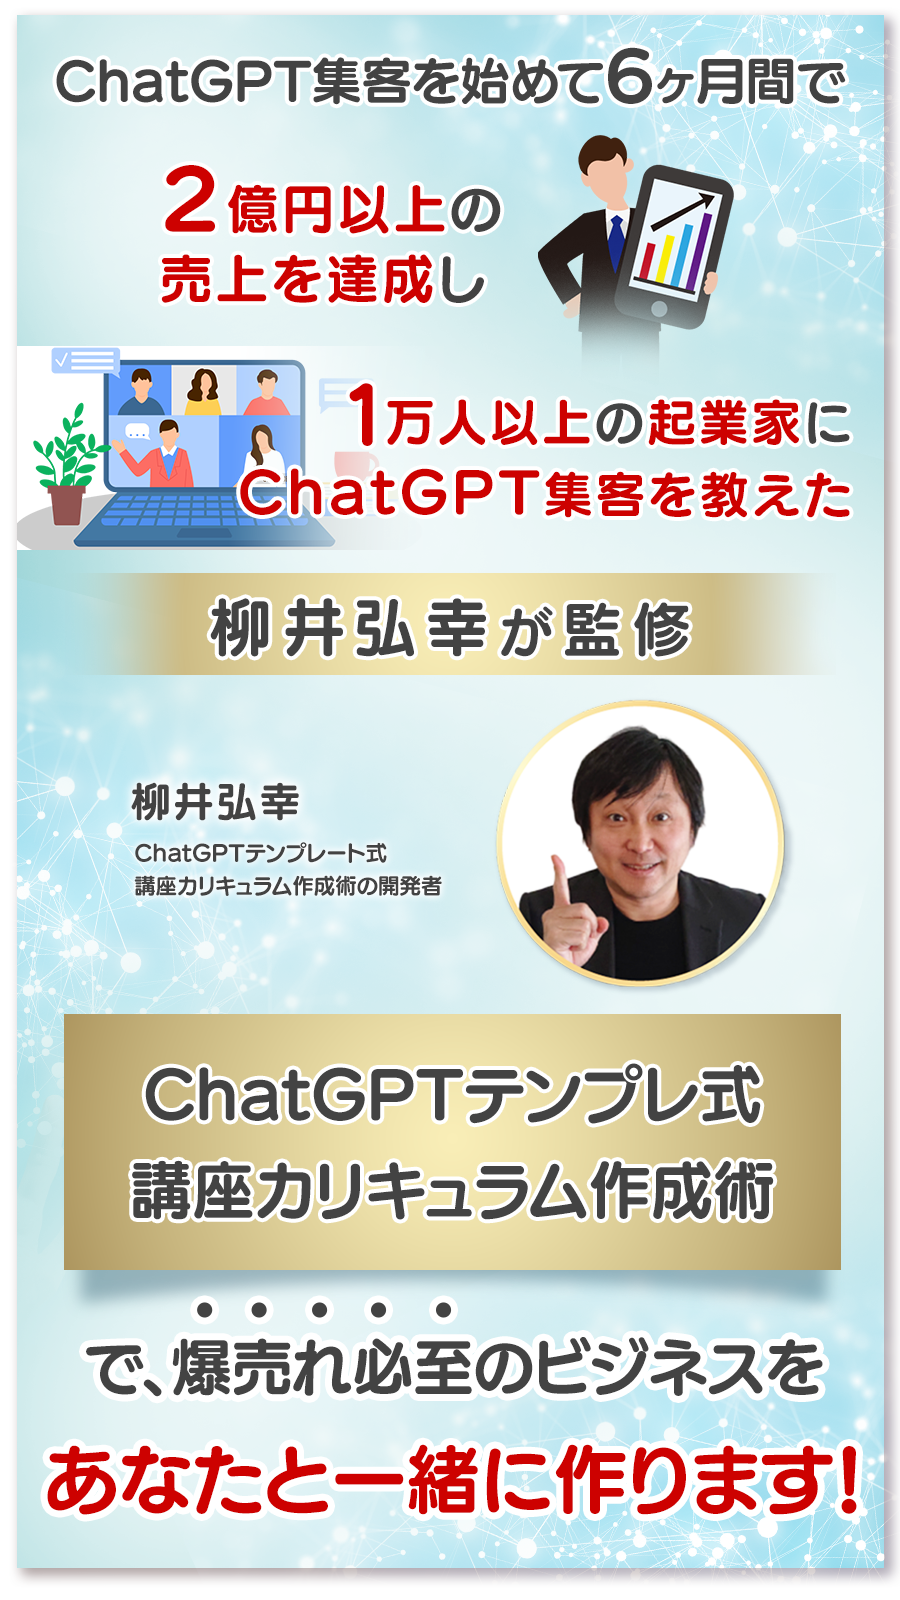 特別無料】ChatGPTおまかせ集客 実践セミナー&説明会【af101 